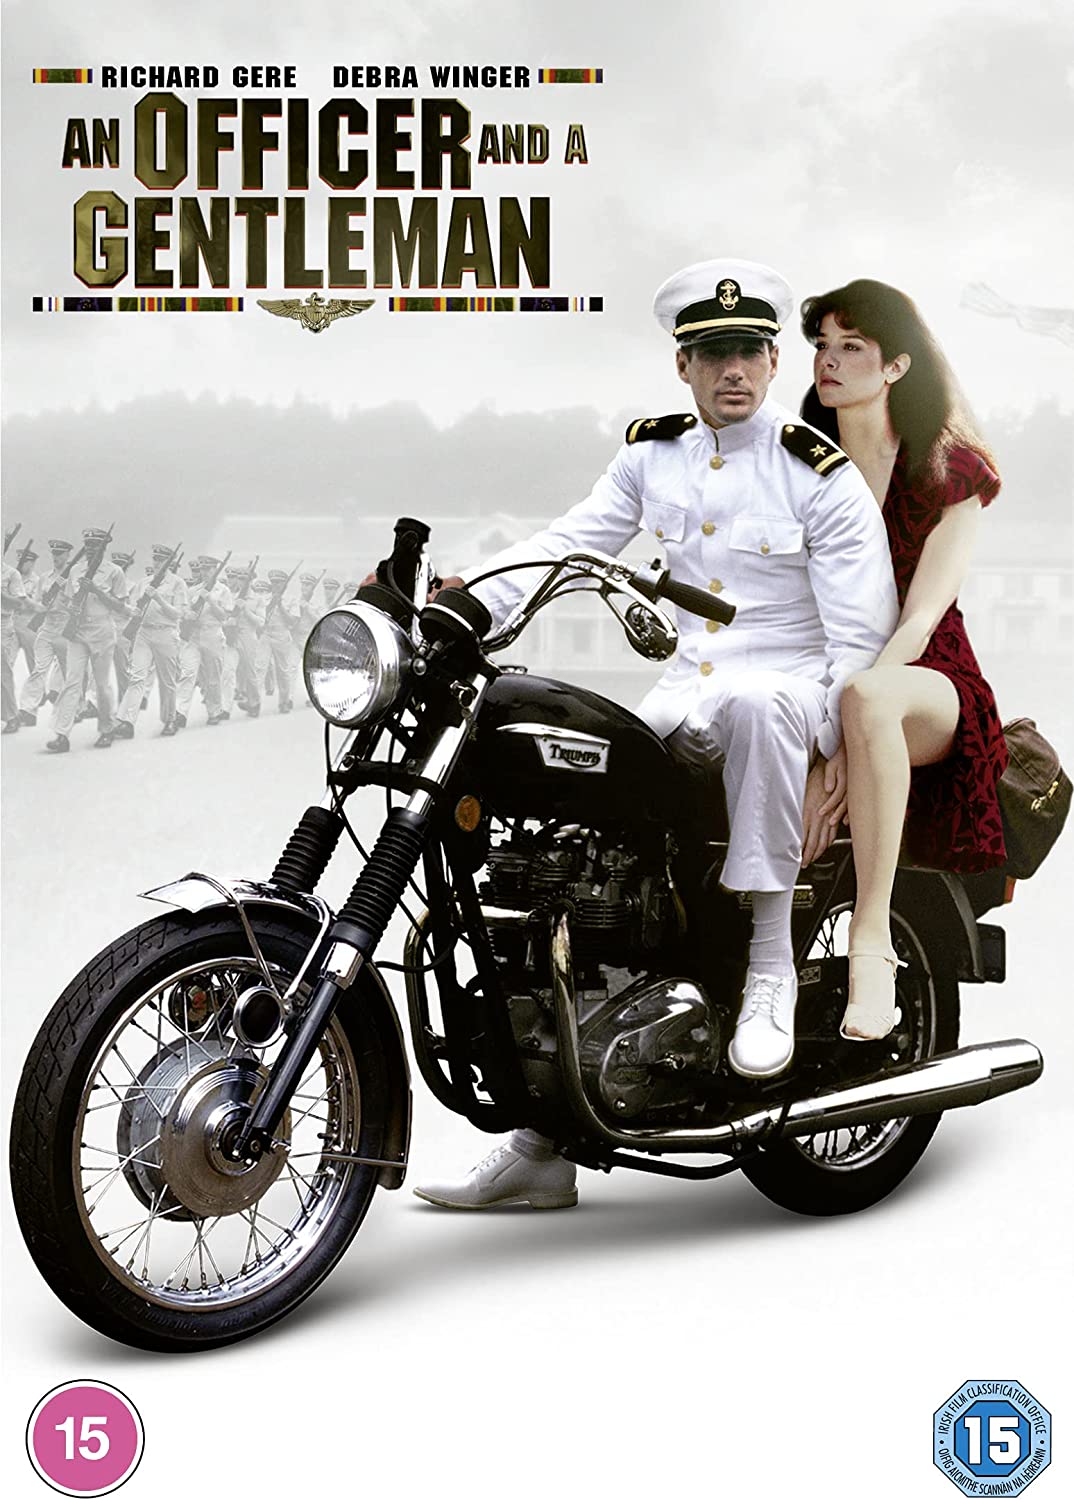 An Officer and a Gentleman - Romance/Drama [DVD]